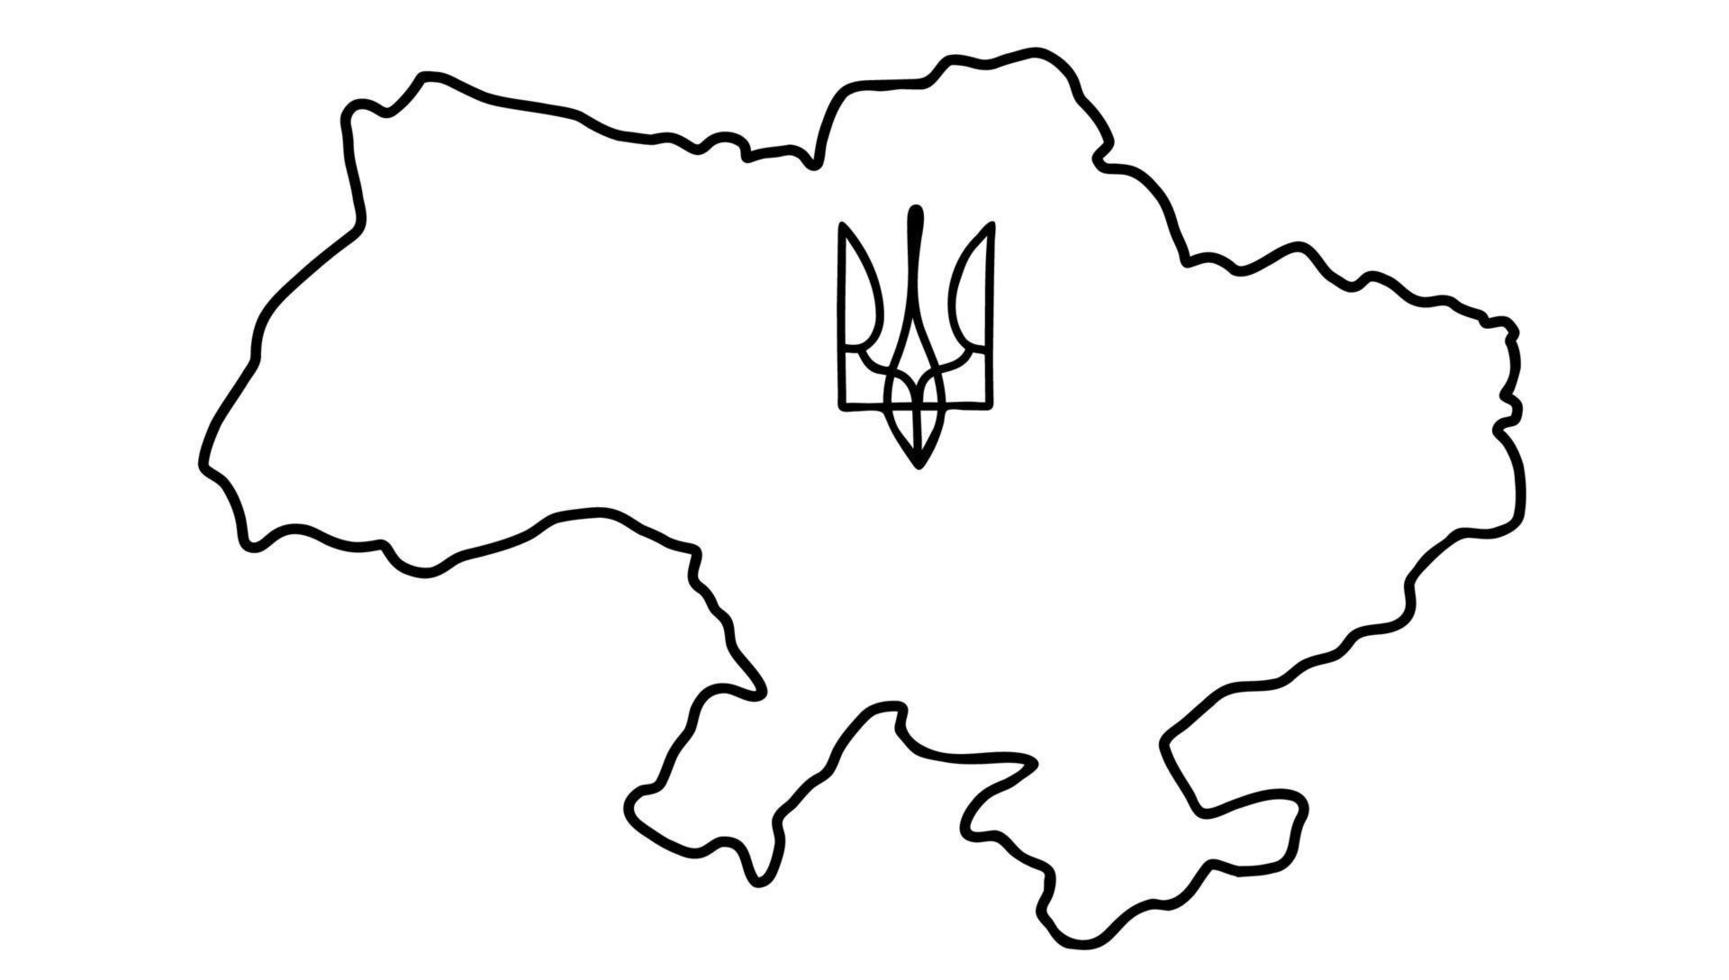 símbolos ucranianos. mapa de contorno de ucrania y escudo de armas del país tridente. ilustración vectorial garabato lineal dibujado a mano. para el diseño y la decoración del tema ucraniano vector